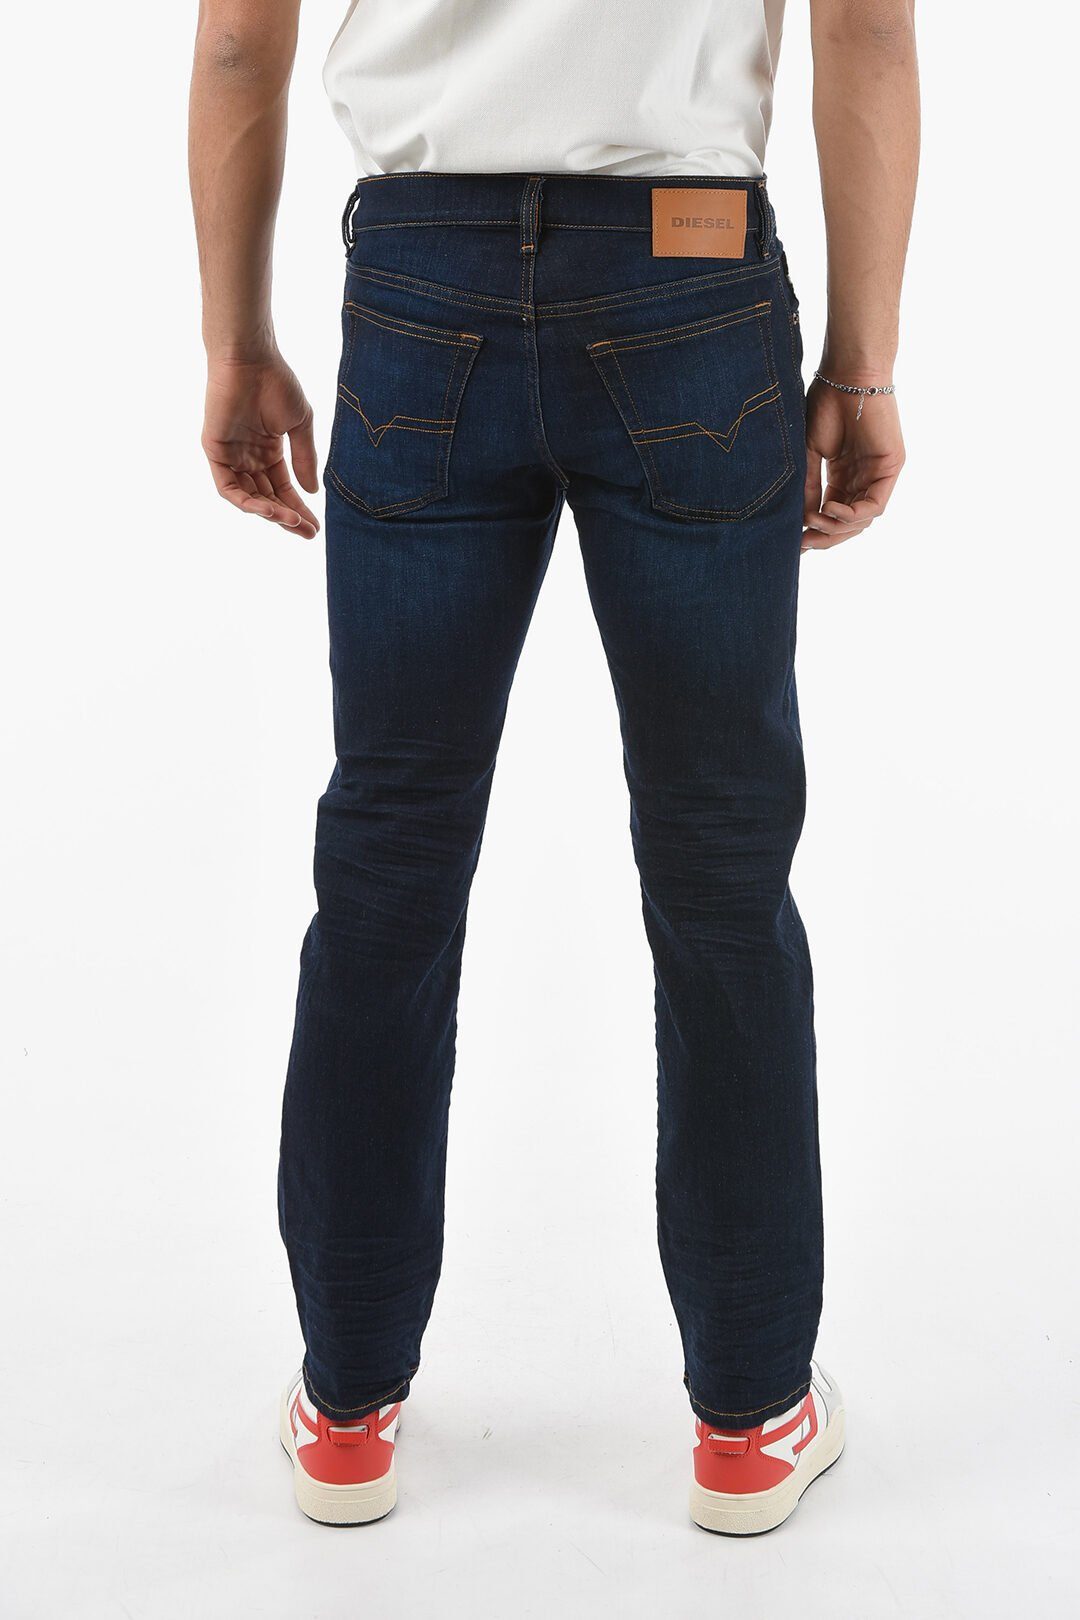 Diesel D-MIHTRY mit Diesel 5-Pocket Style, Straight-Jeans Jeans Herren Stretch-Anteil 0GDAO